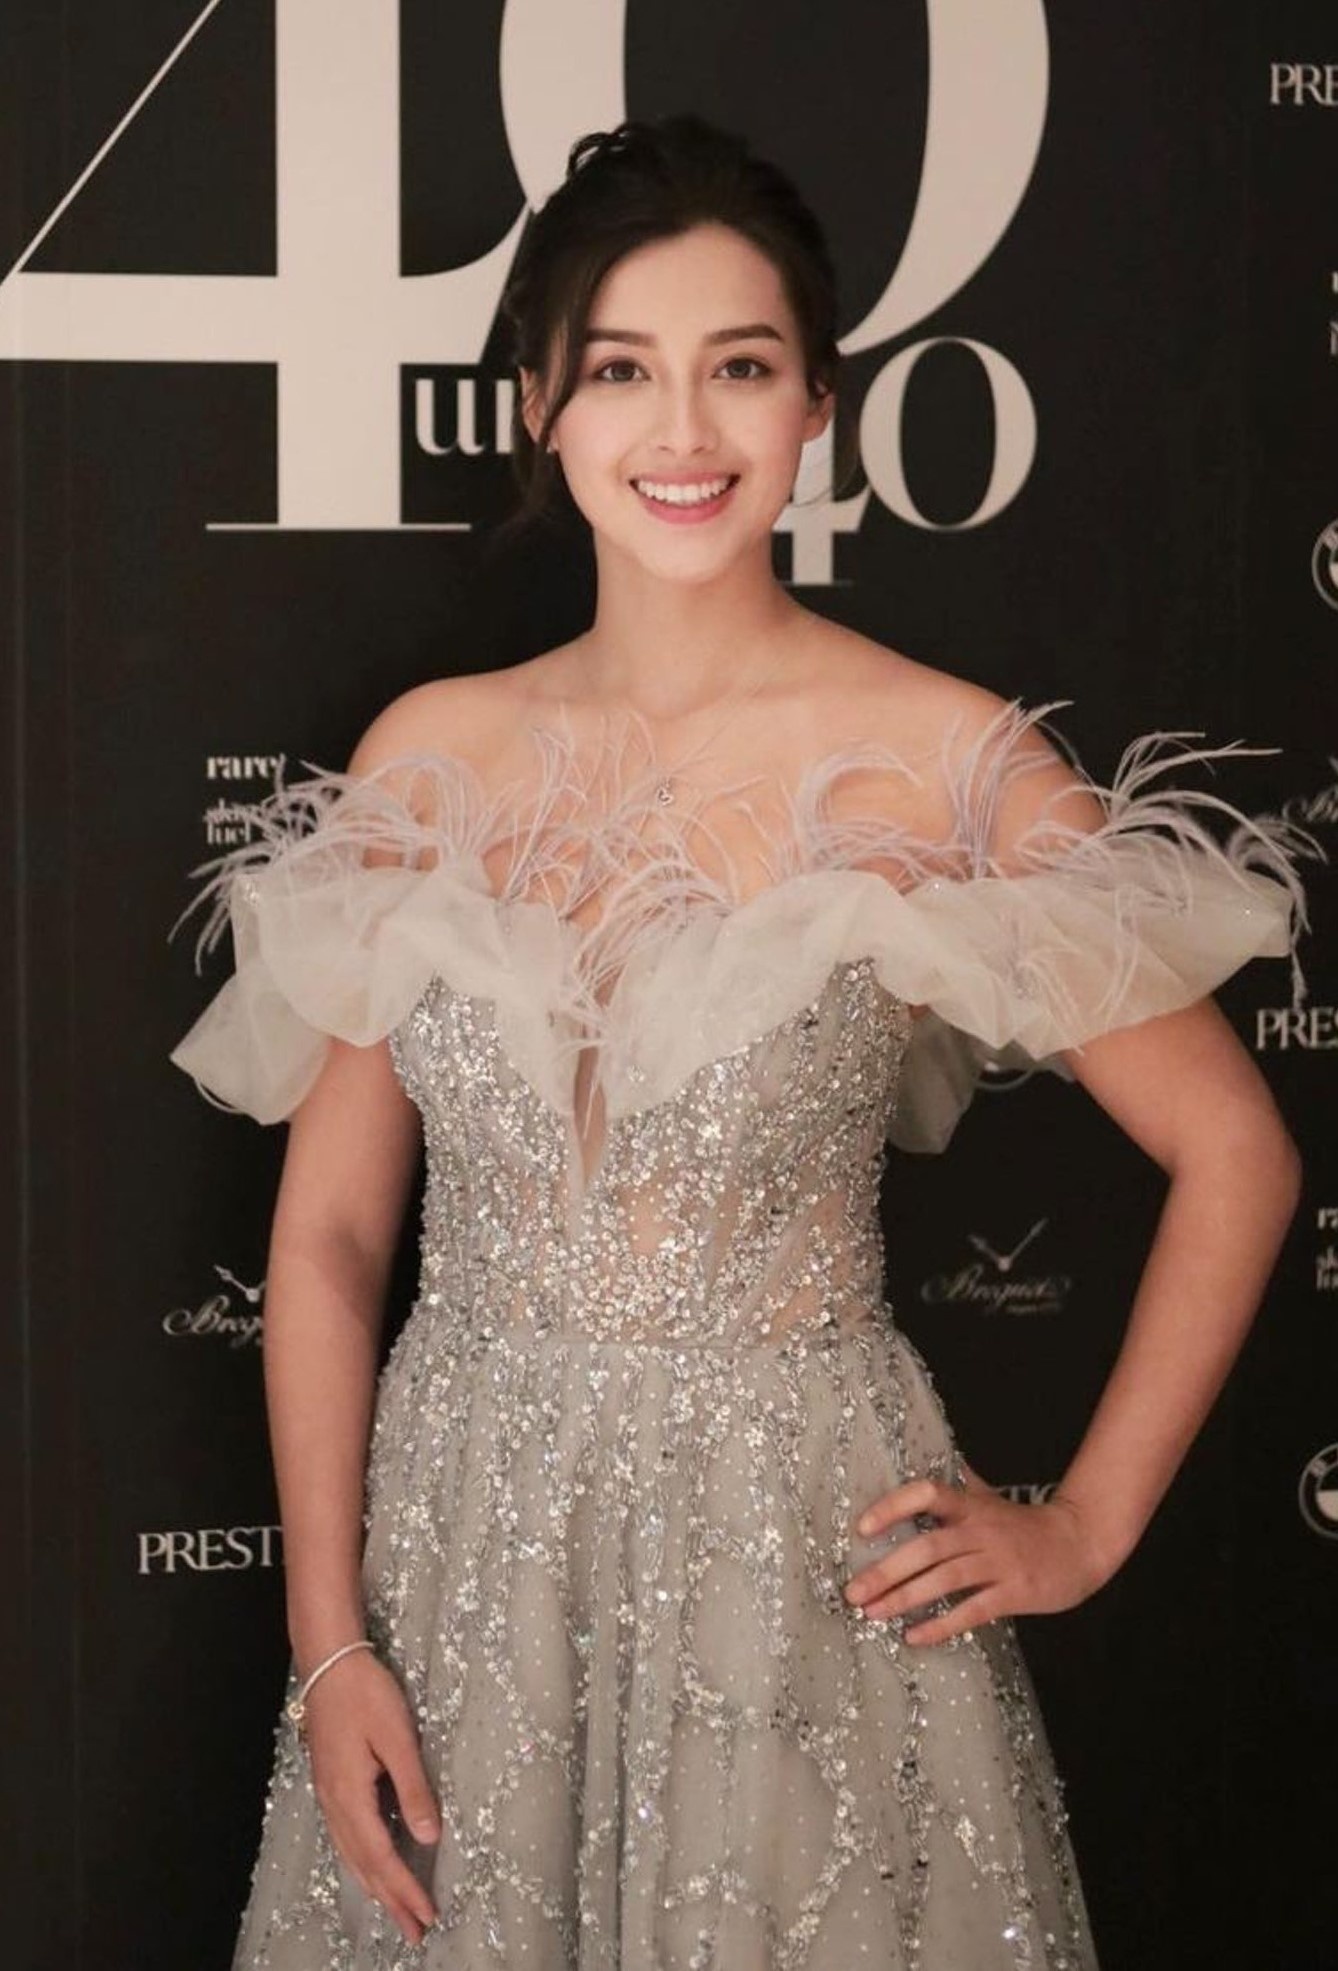 Hoa hậu đẹp nhất Hồng Kông xếp hàng chờ việc, phải bán hàng online - Ảnh 7.